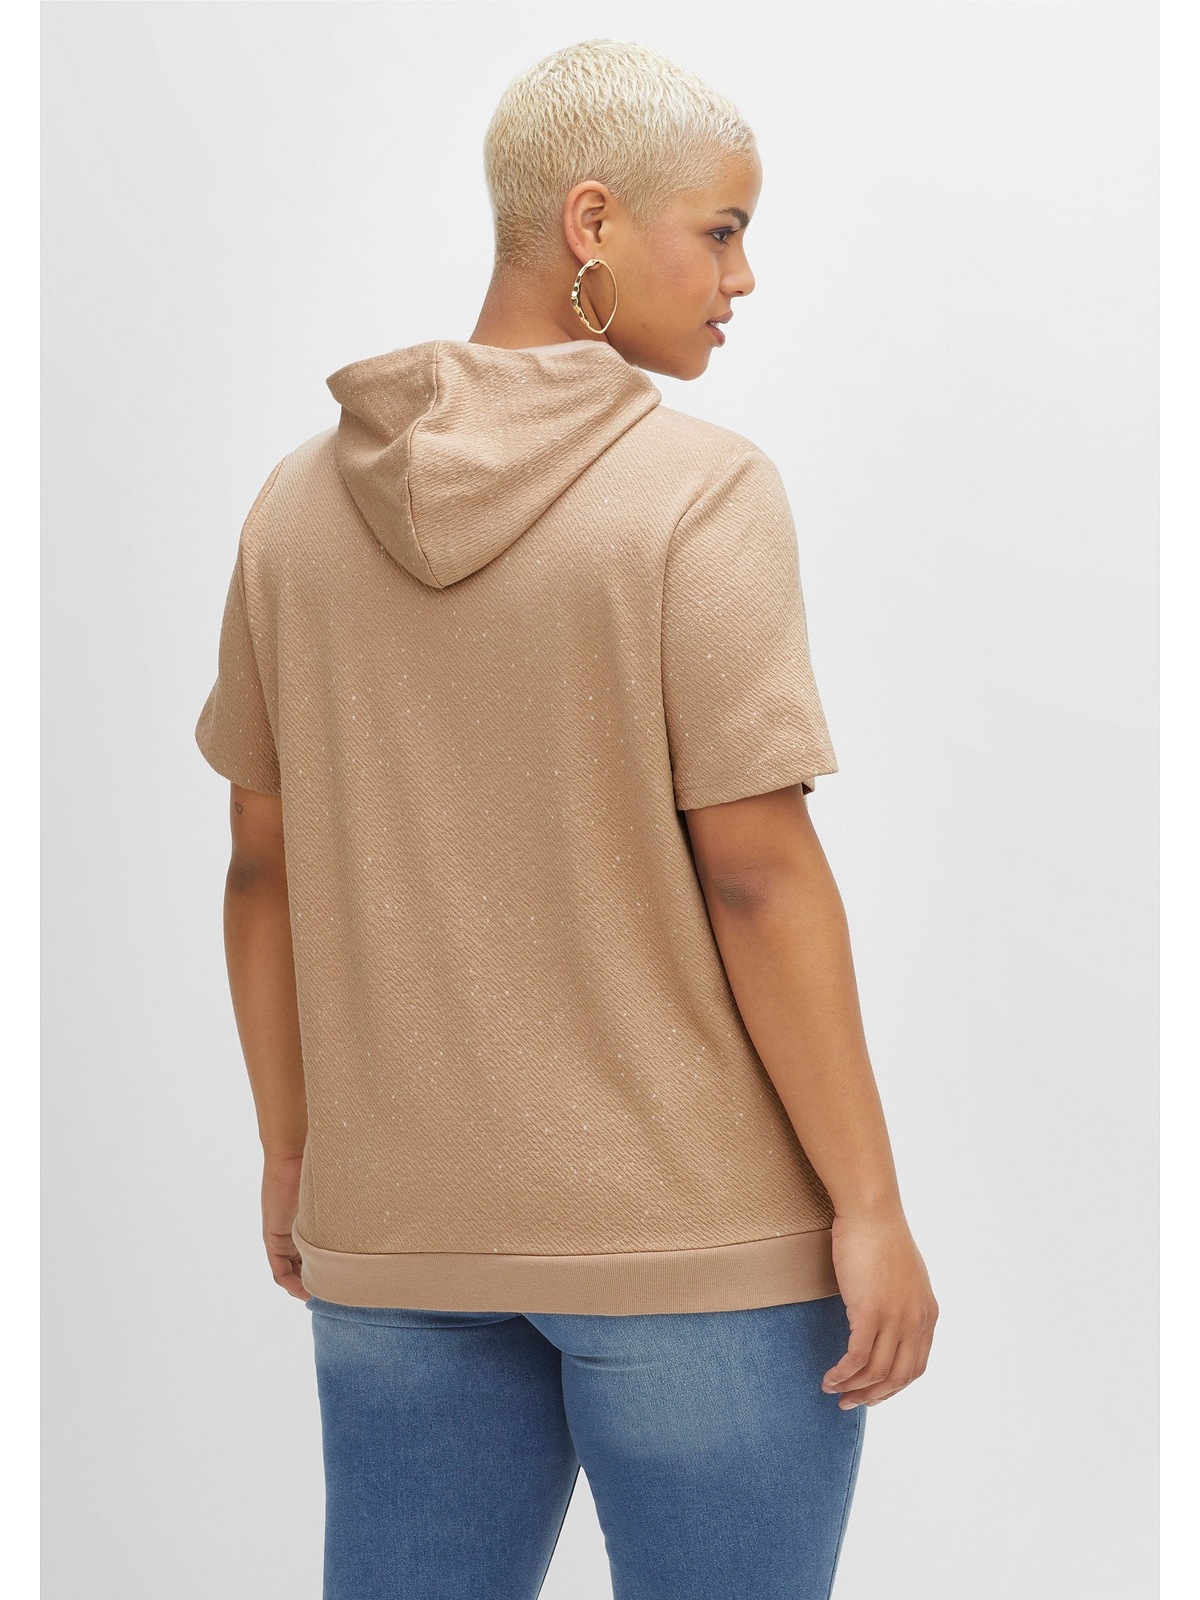 Sheego T-Shirt »Große Größen«, aus leichter Sweatware, mit Kapuze shoppen